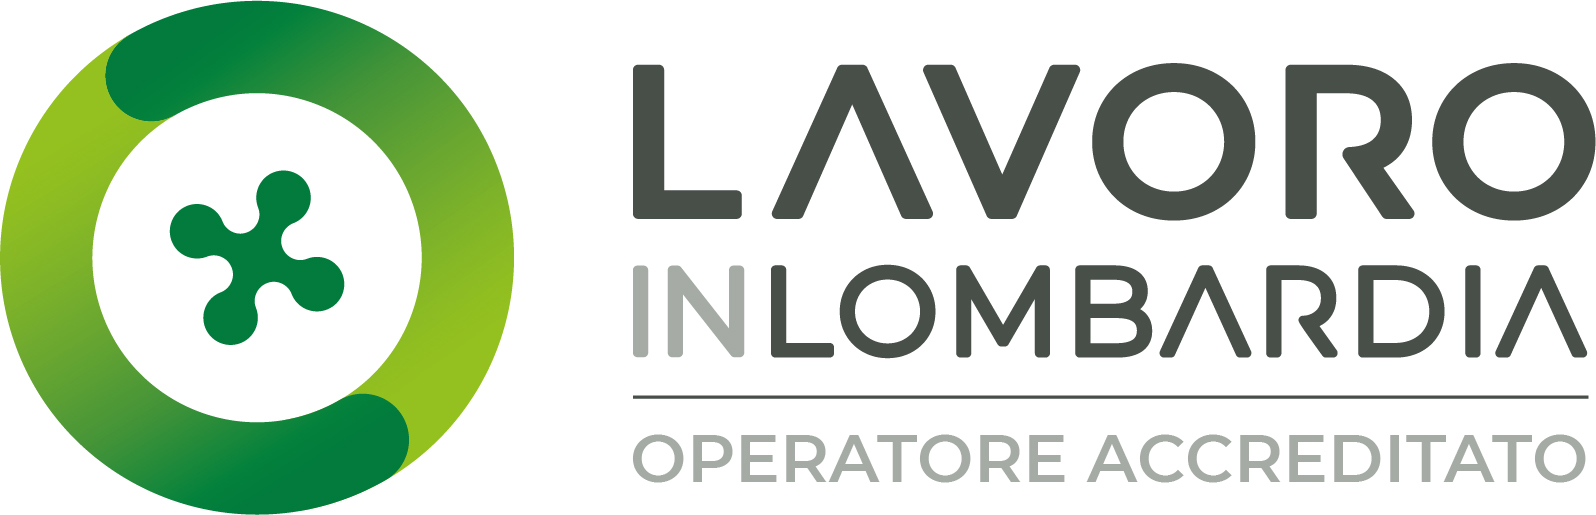 Marchio Operatore Accreditato Lavoro in Lombardia